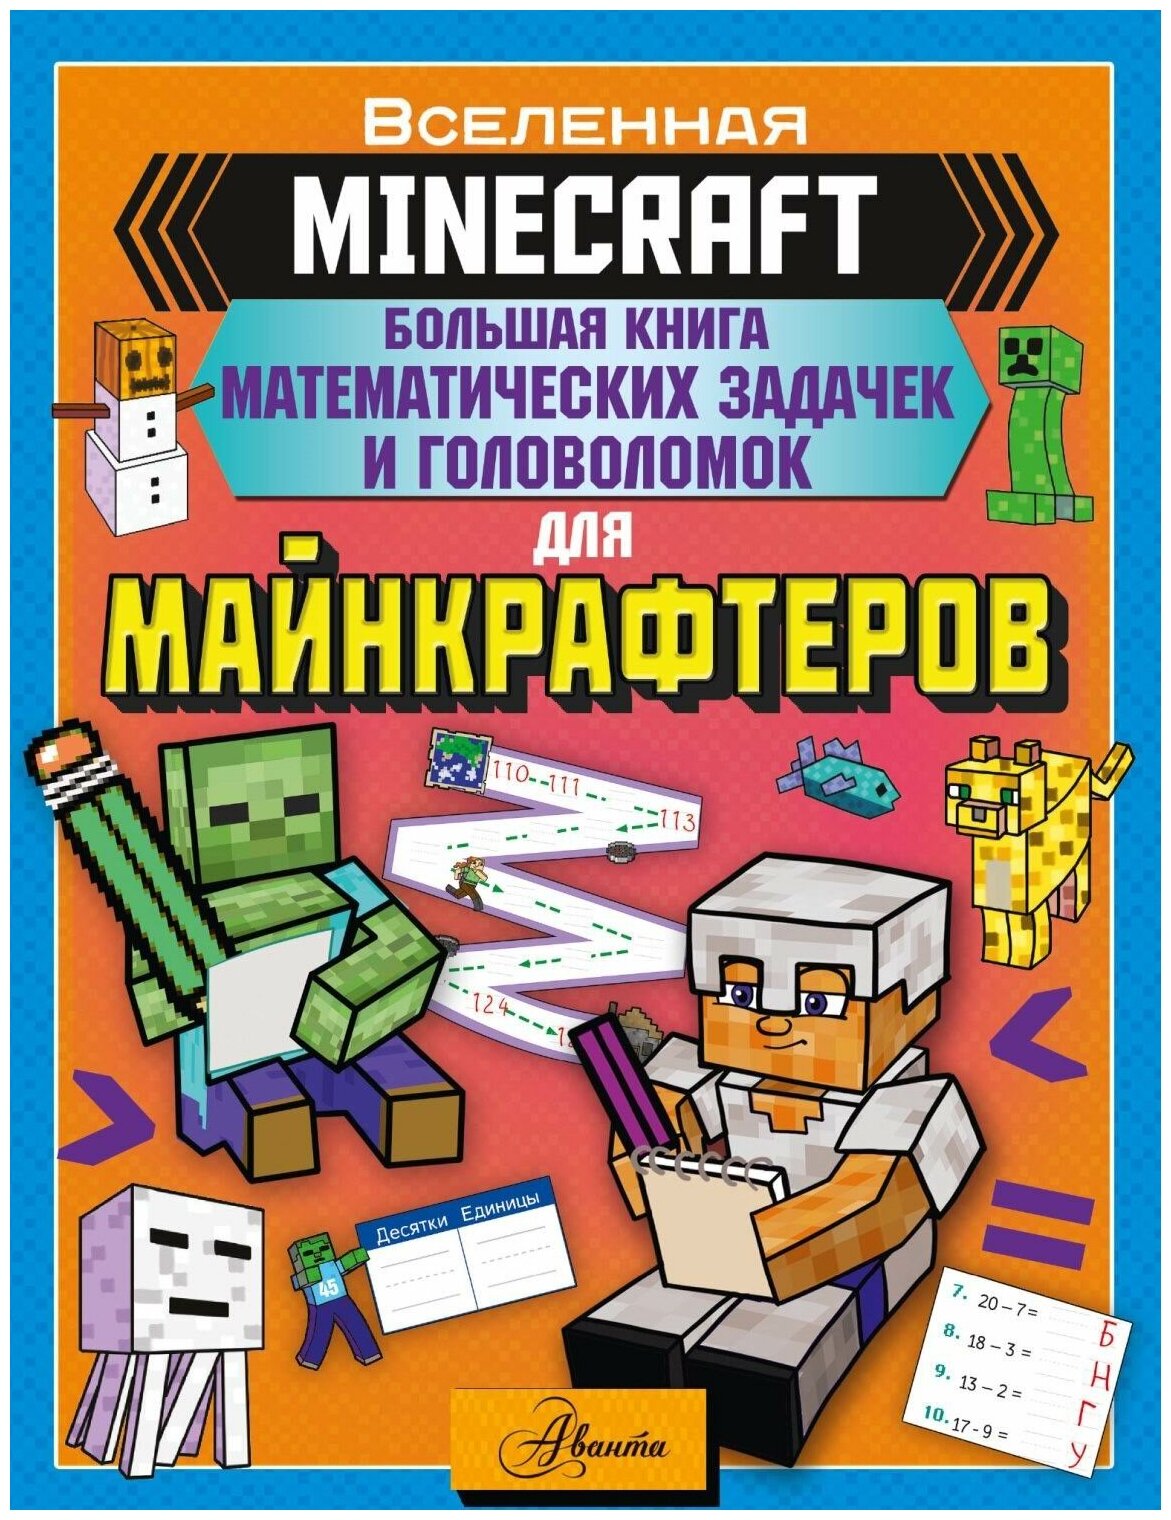 Книга АСТ Minecraft. Большая книга математических задачек и головоломок для майнкрафтеров 153378-6